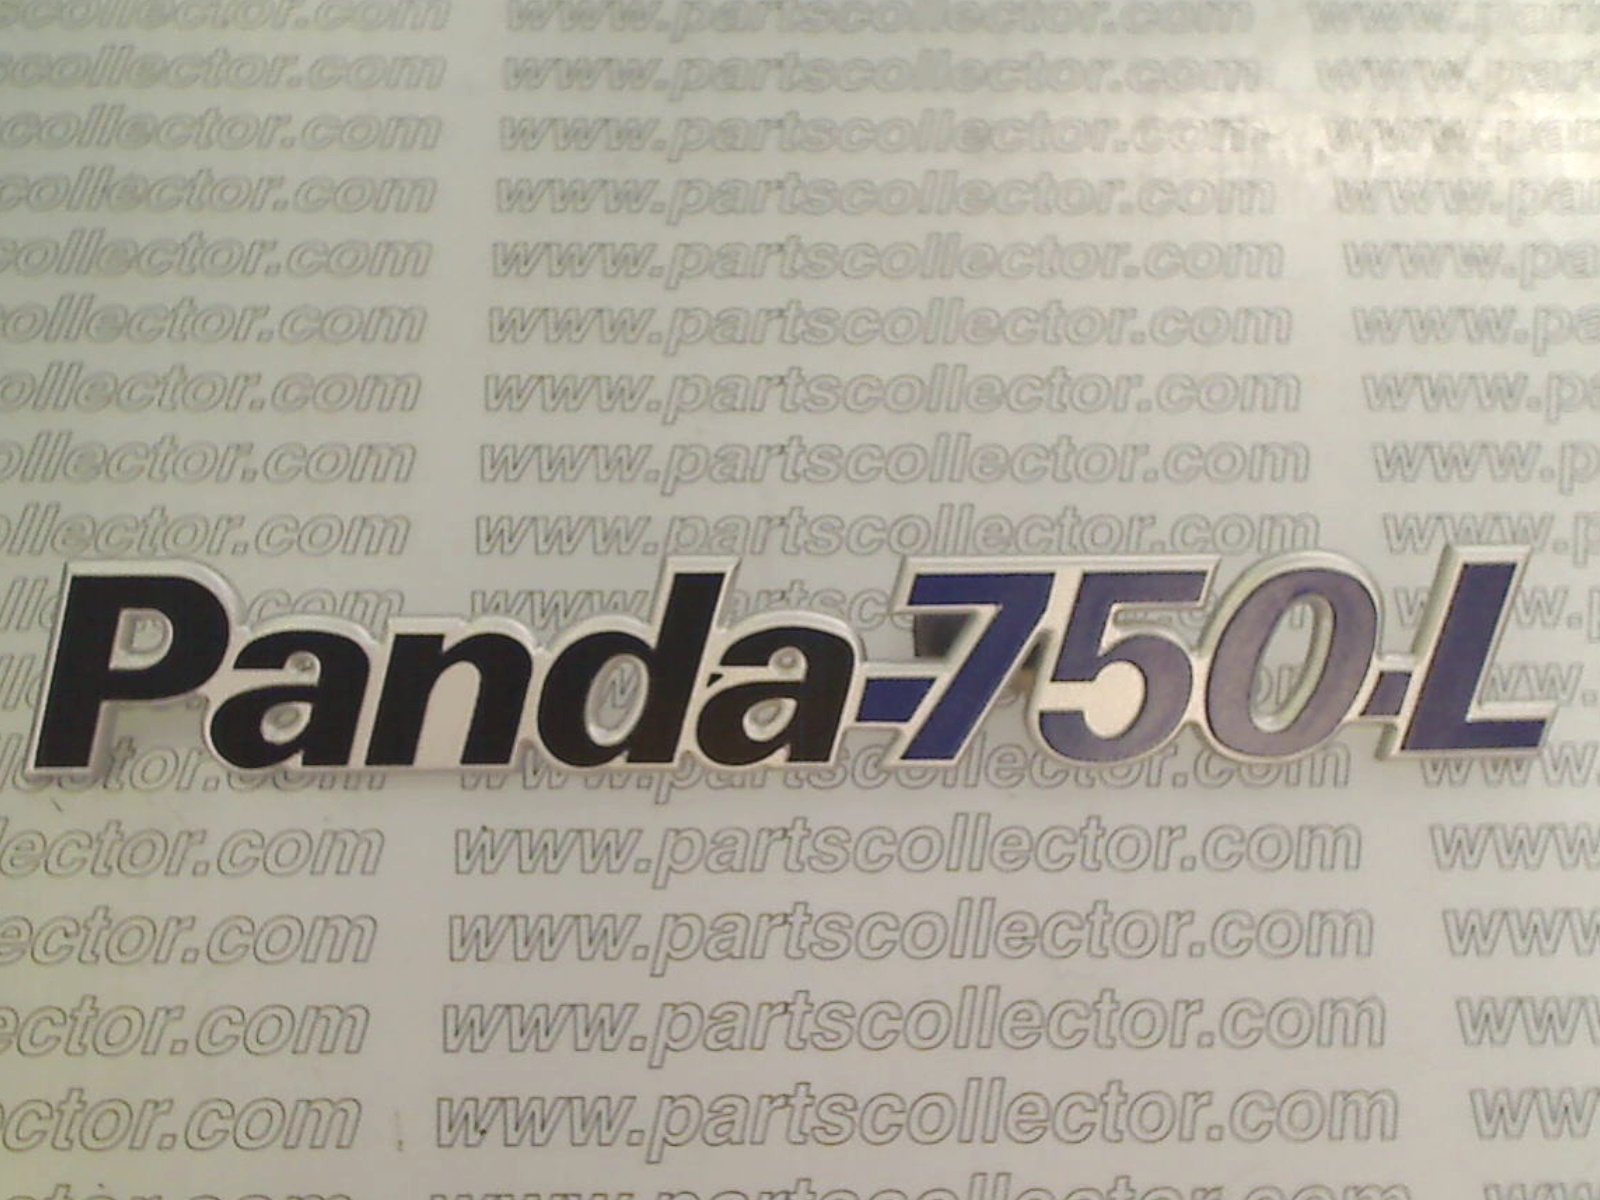 STEMMA PANDA 750 L